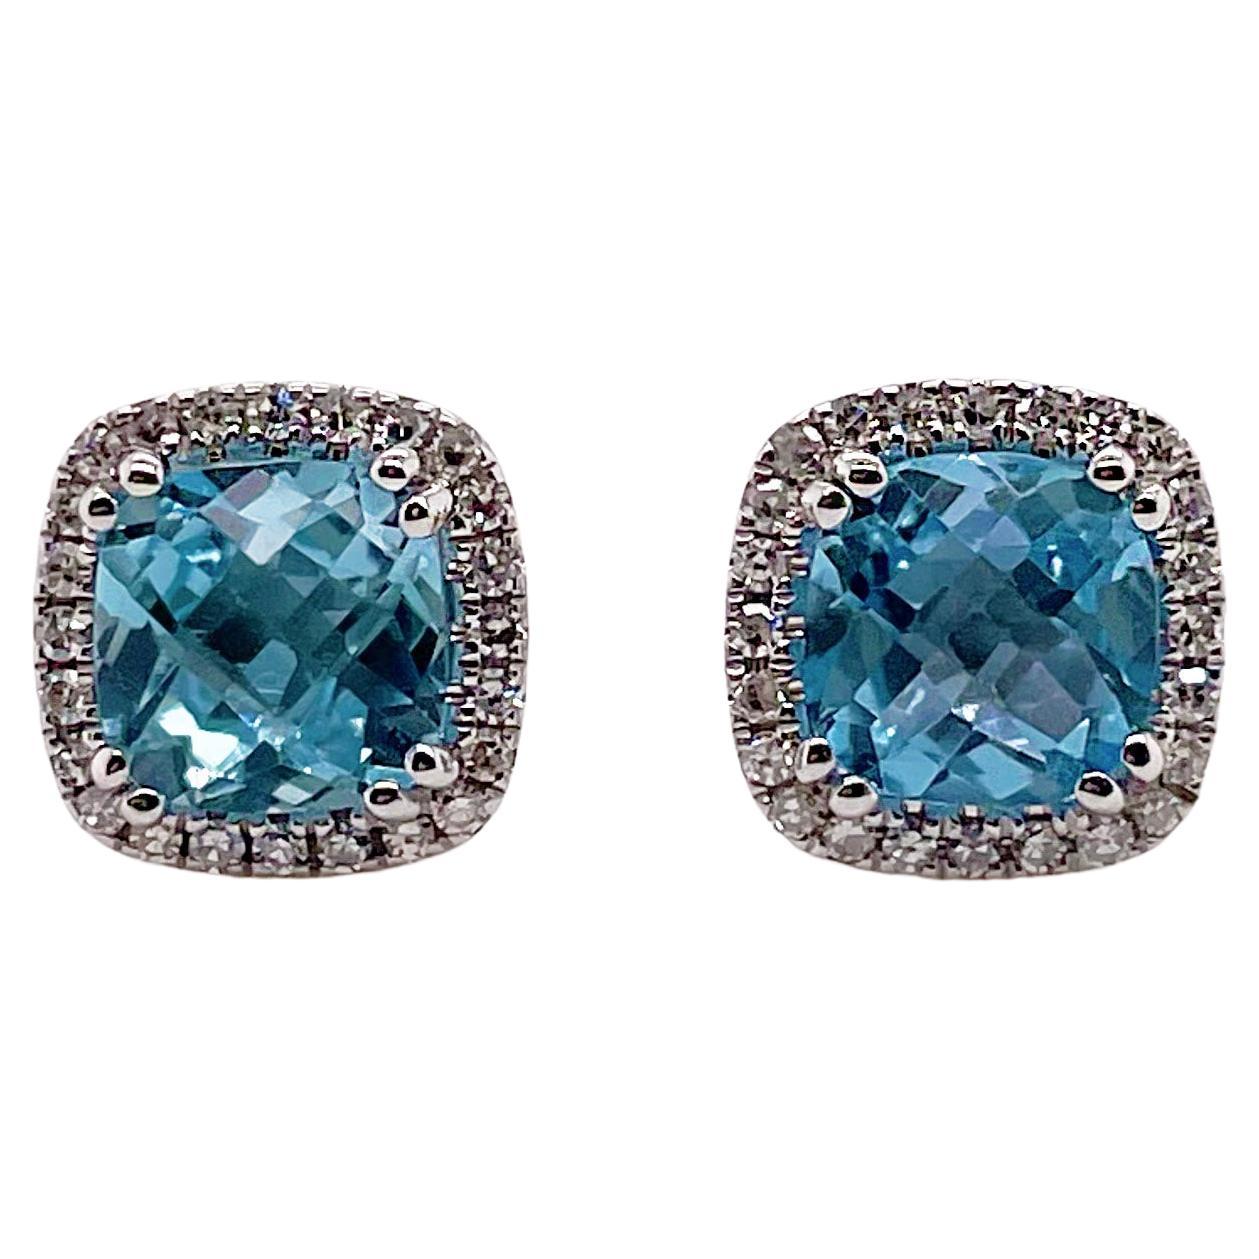 Blue Topaz Diamond Halo Earrings in 14K White Gold Stud Earrings Post Earrings